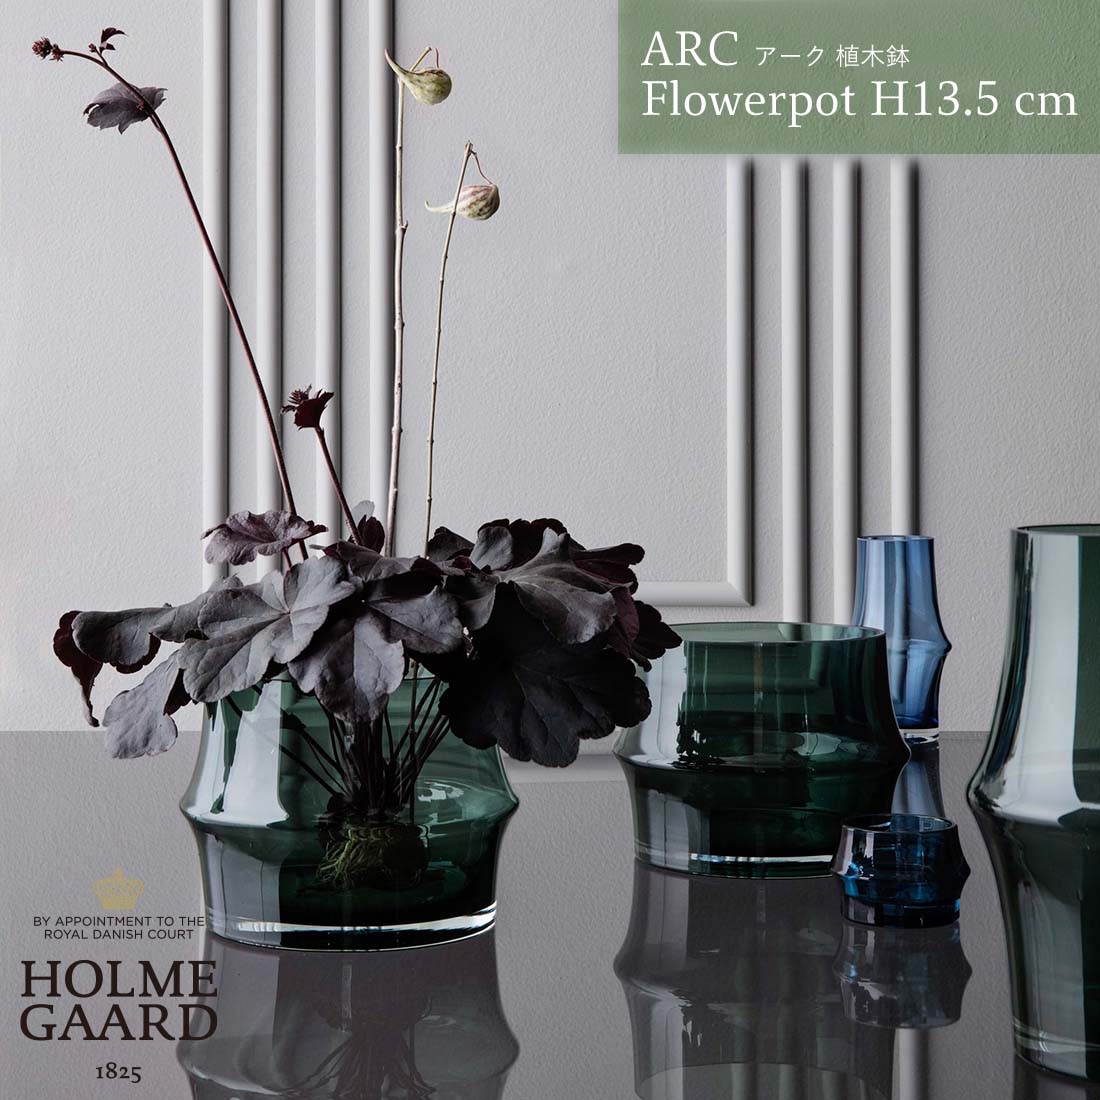 ホルムガード HOLMEGAARD ARC Flowerpot H13.5cm ホルムガード アーク フラワーポット 植木鉢 Sebastian Holmbck セバスチャン・ホルムバック